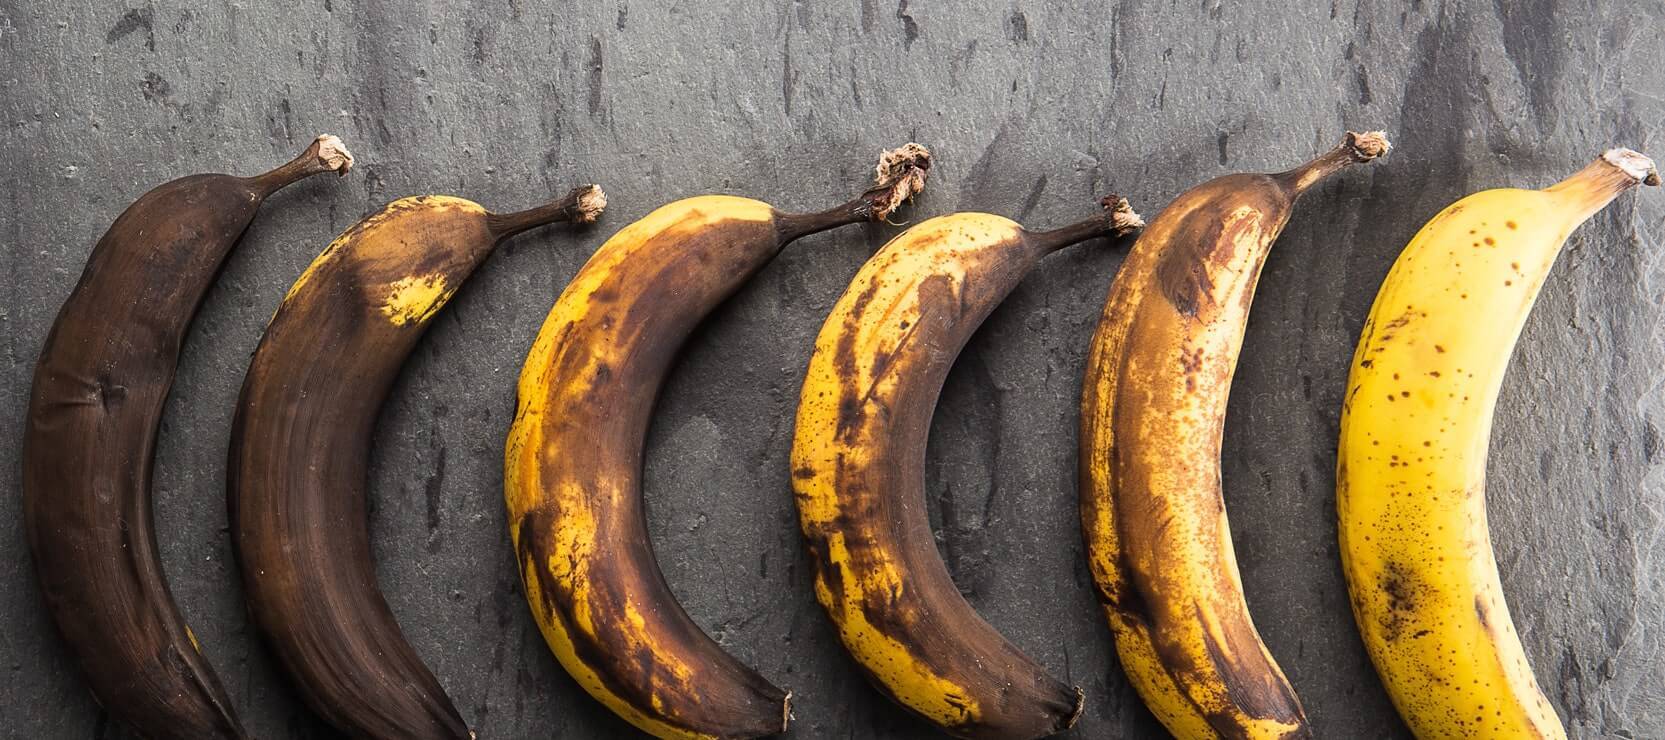 What makes bananas radioactive 1